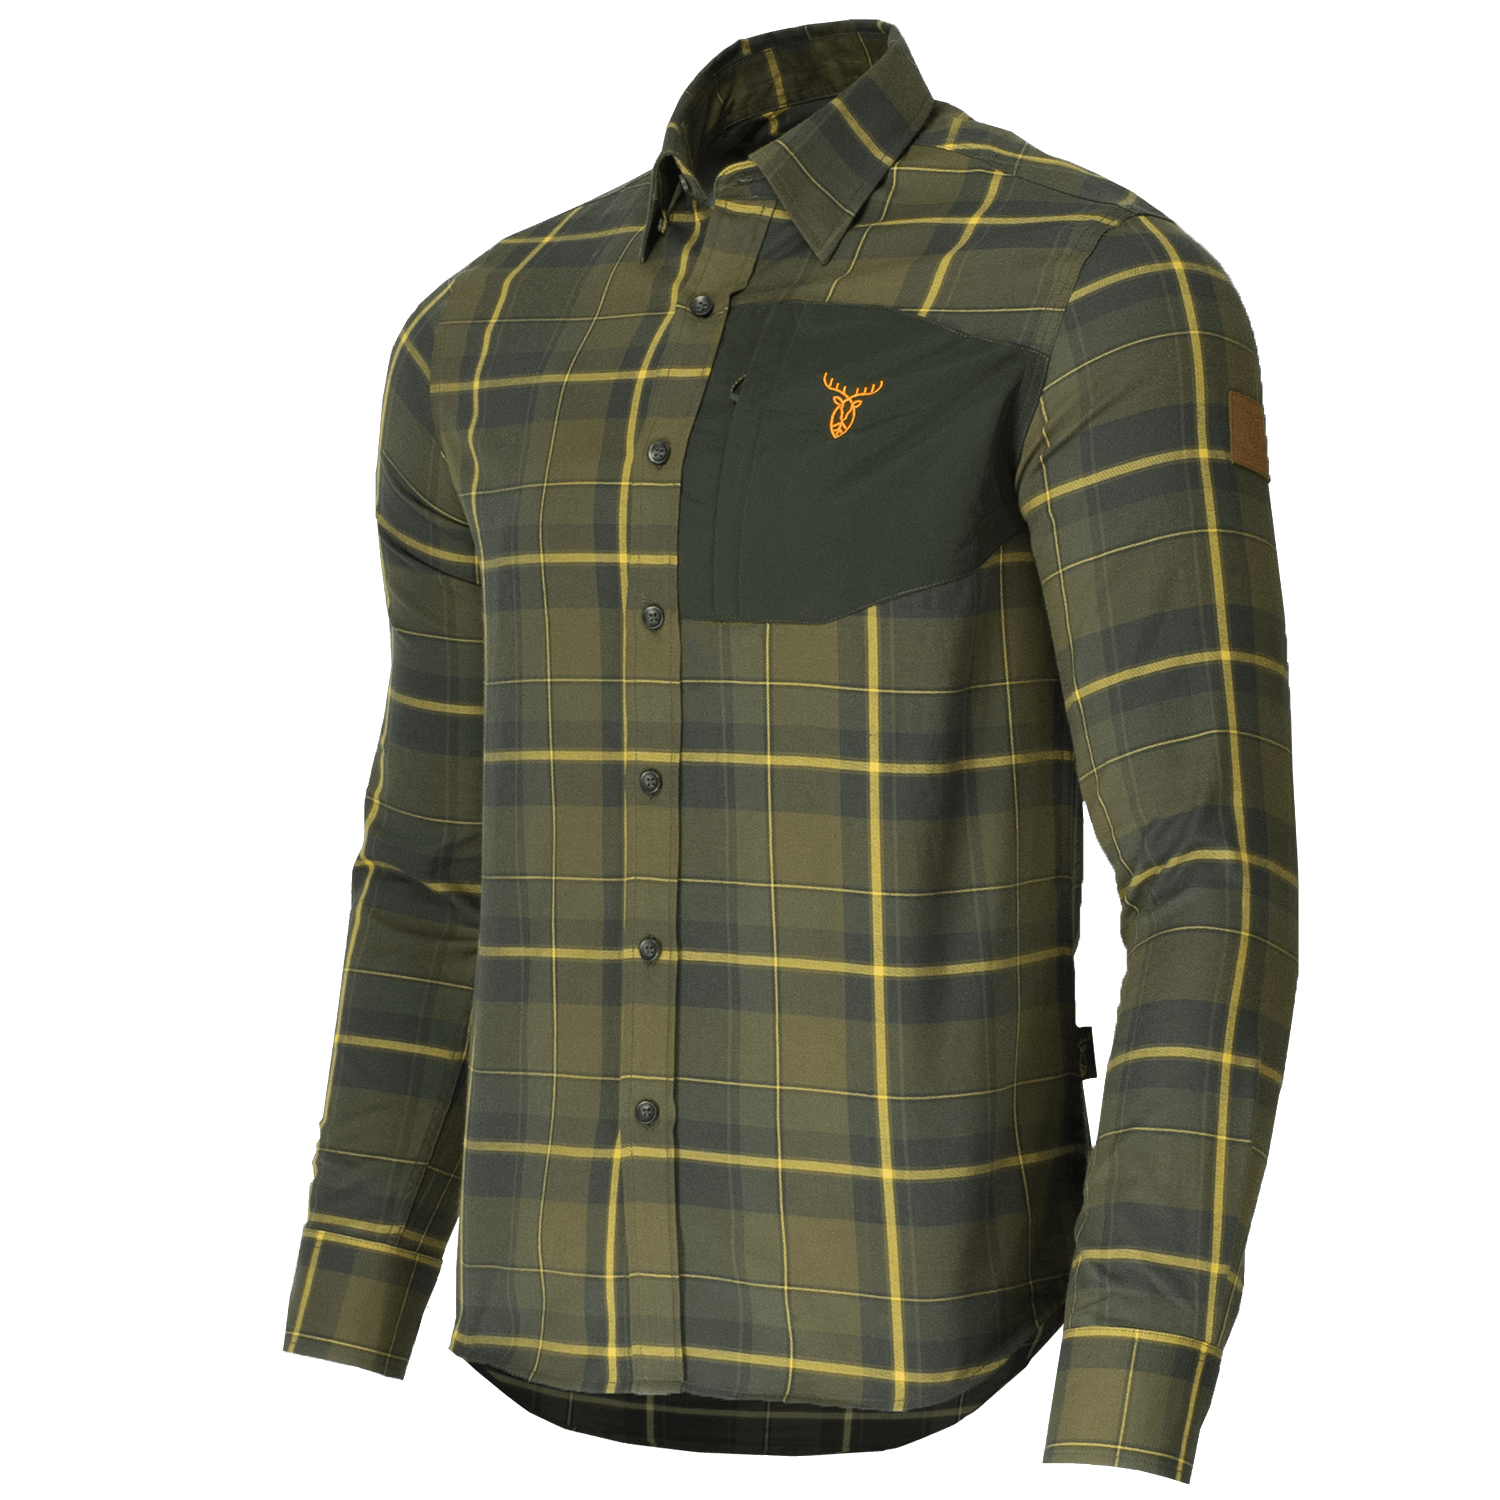 Pirscher Gear Field Shirt (Crsip Green) - Gifts For Hunters